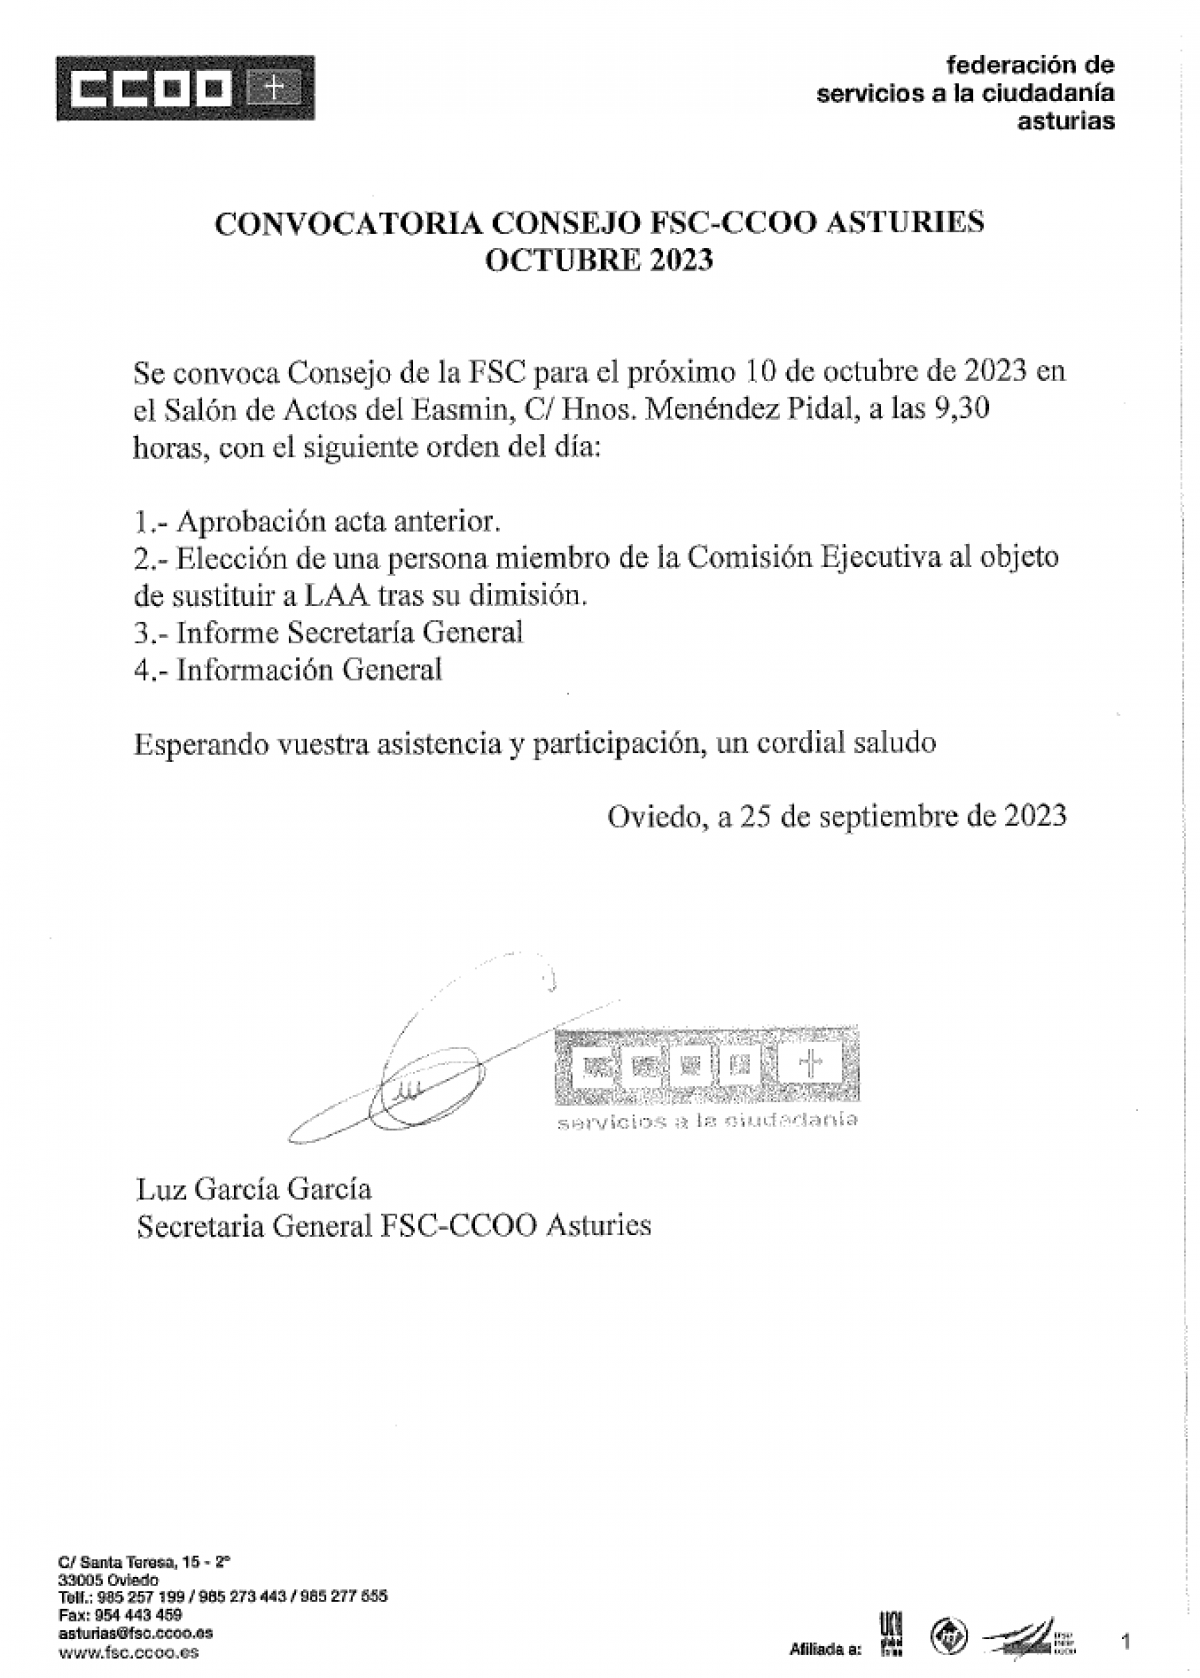 Convocatoria de Consejo FSC-CCOO Asturias